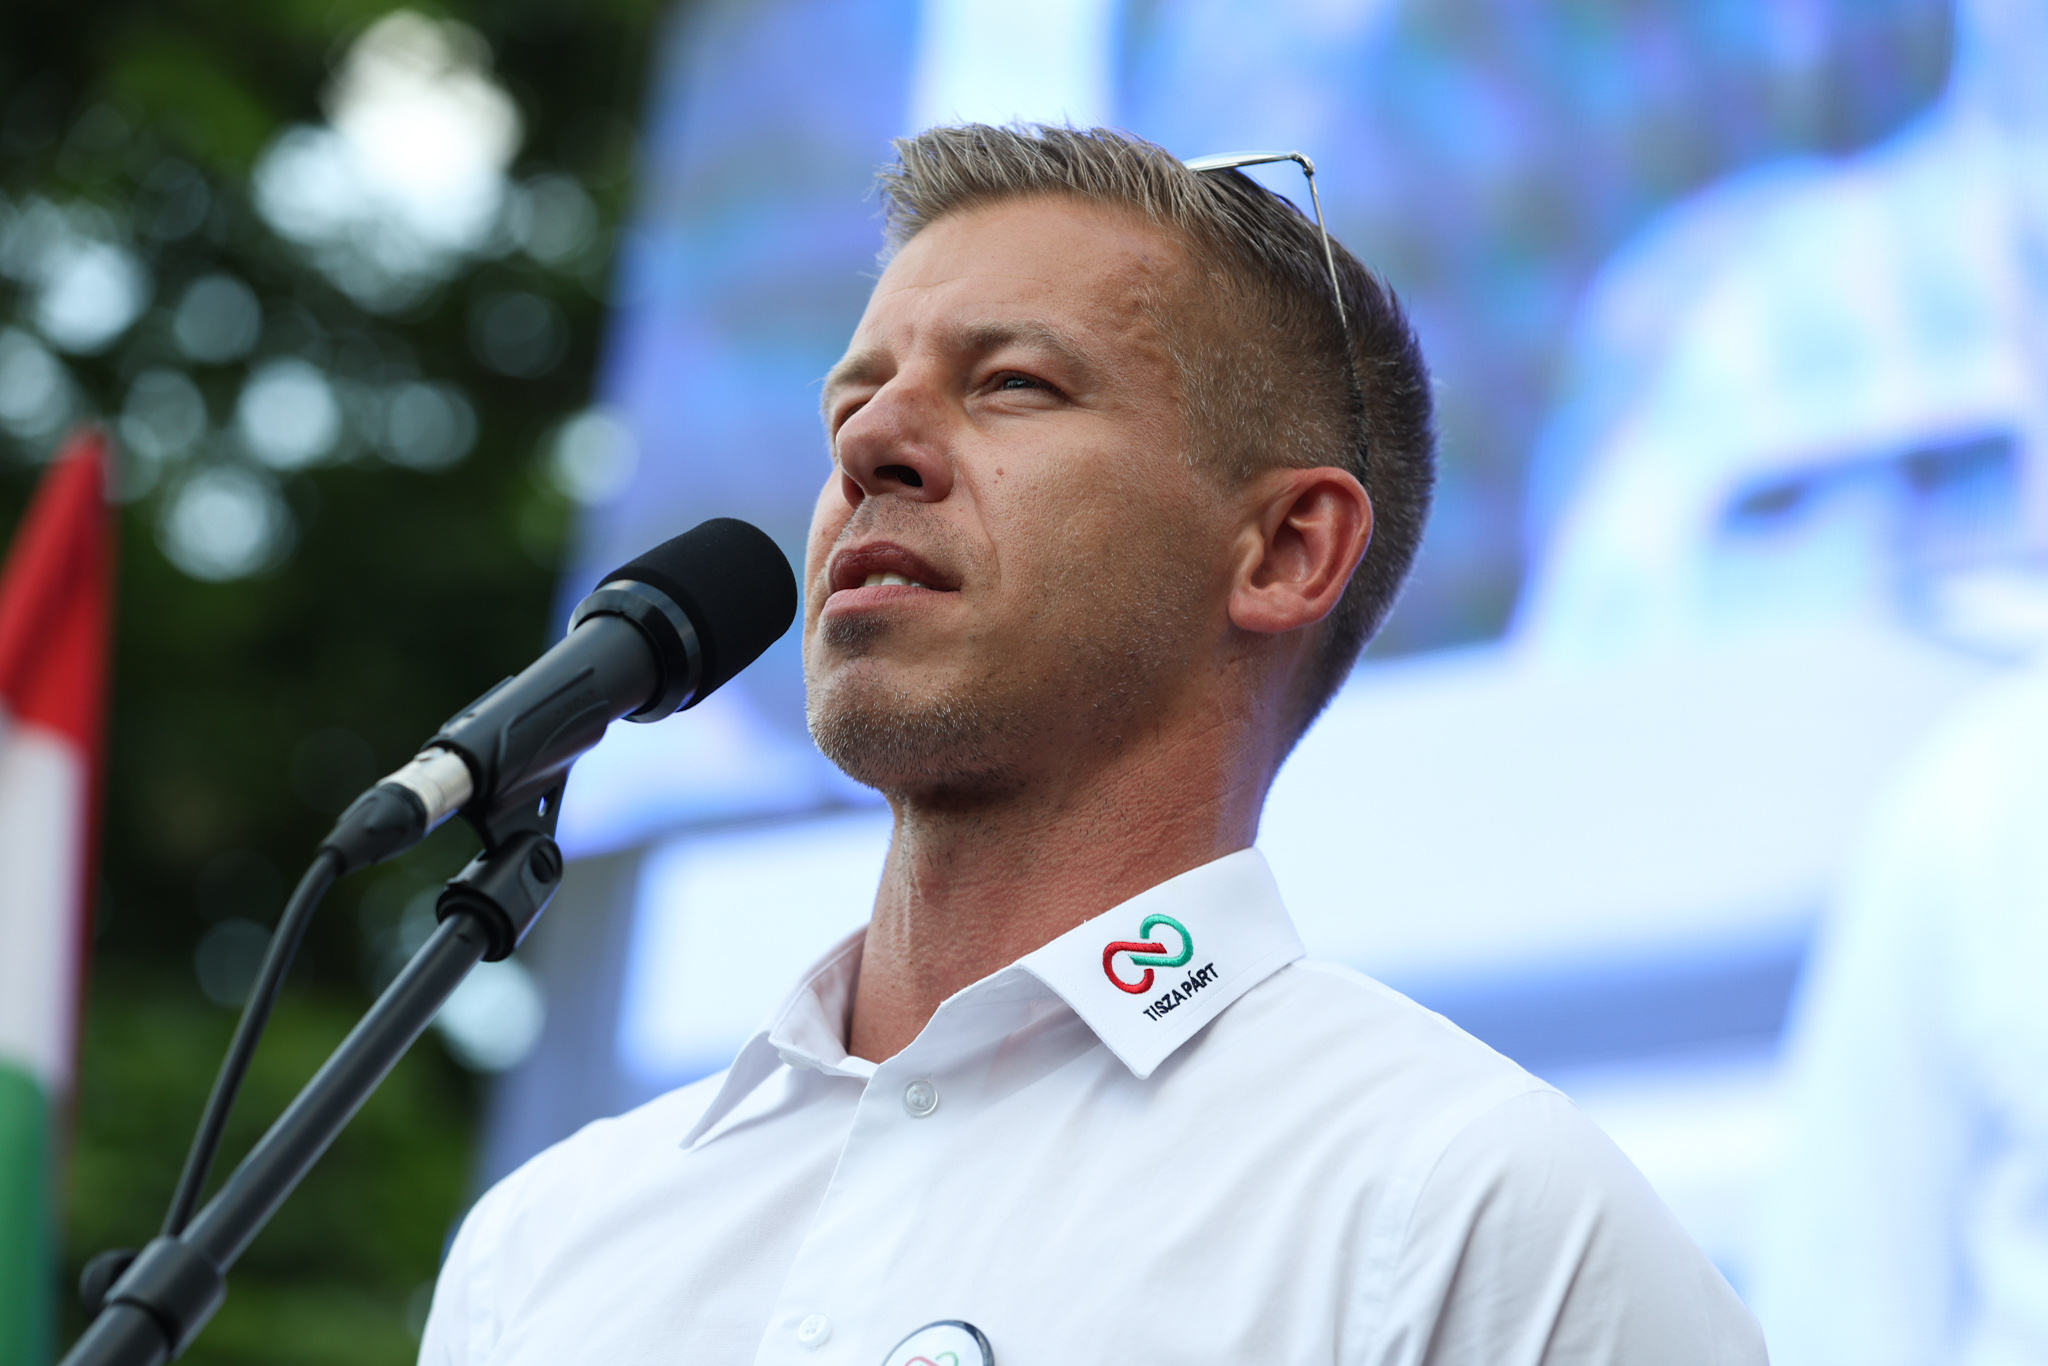 Magyar Péter Orbánék új pártszövetségéről: Olyan ez, mint amikor egyik klubba sem hívnak meg, ezért sértődötten alapítasz egy sajátot